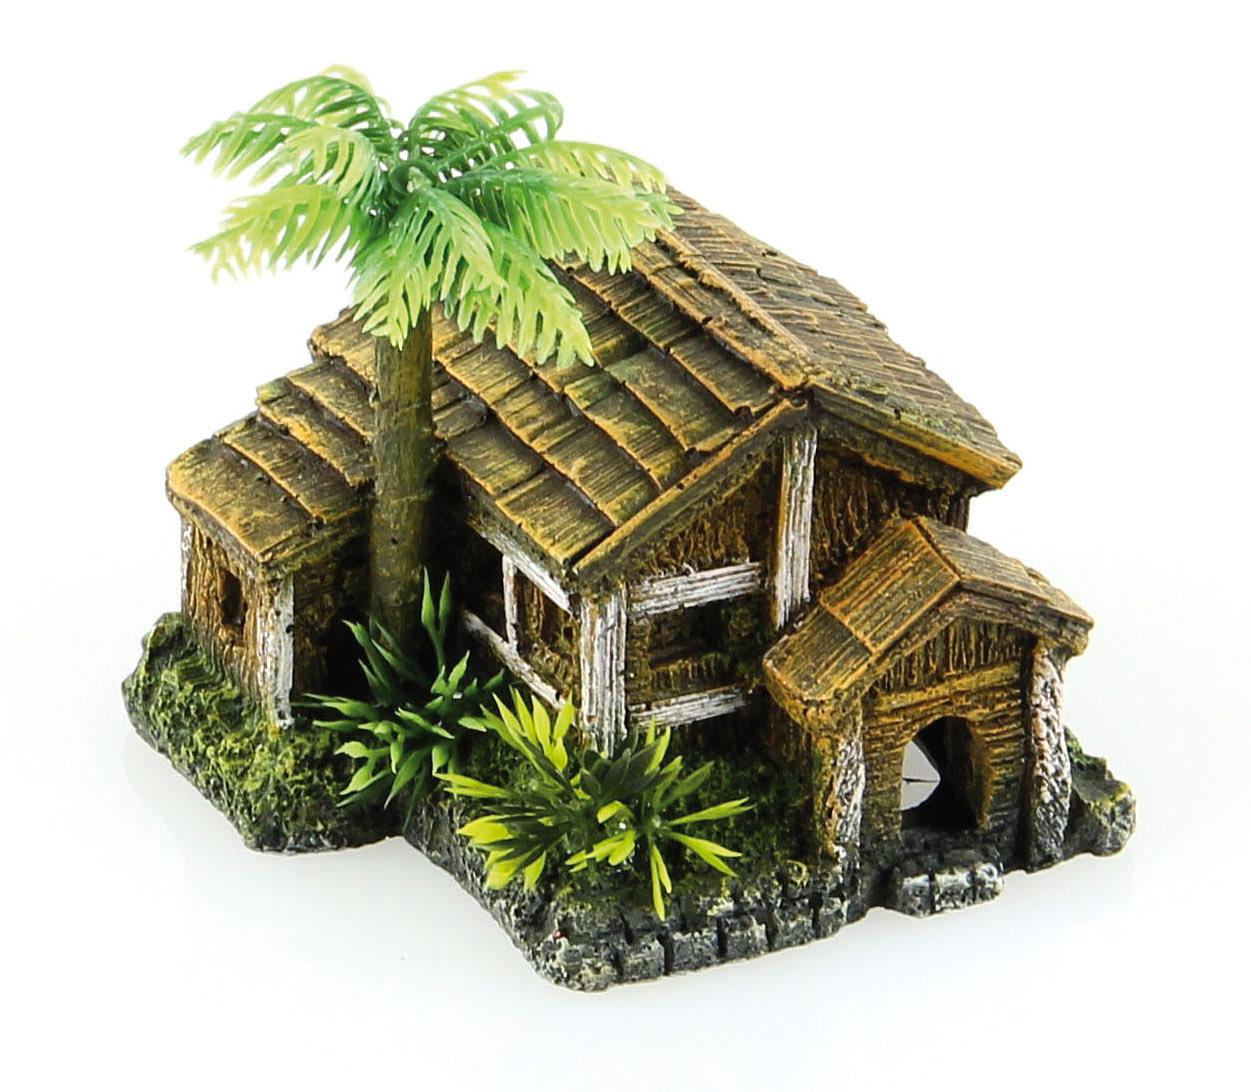 Amazonas Maison en bois avec palmiers